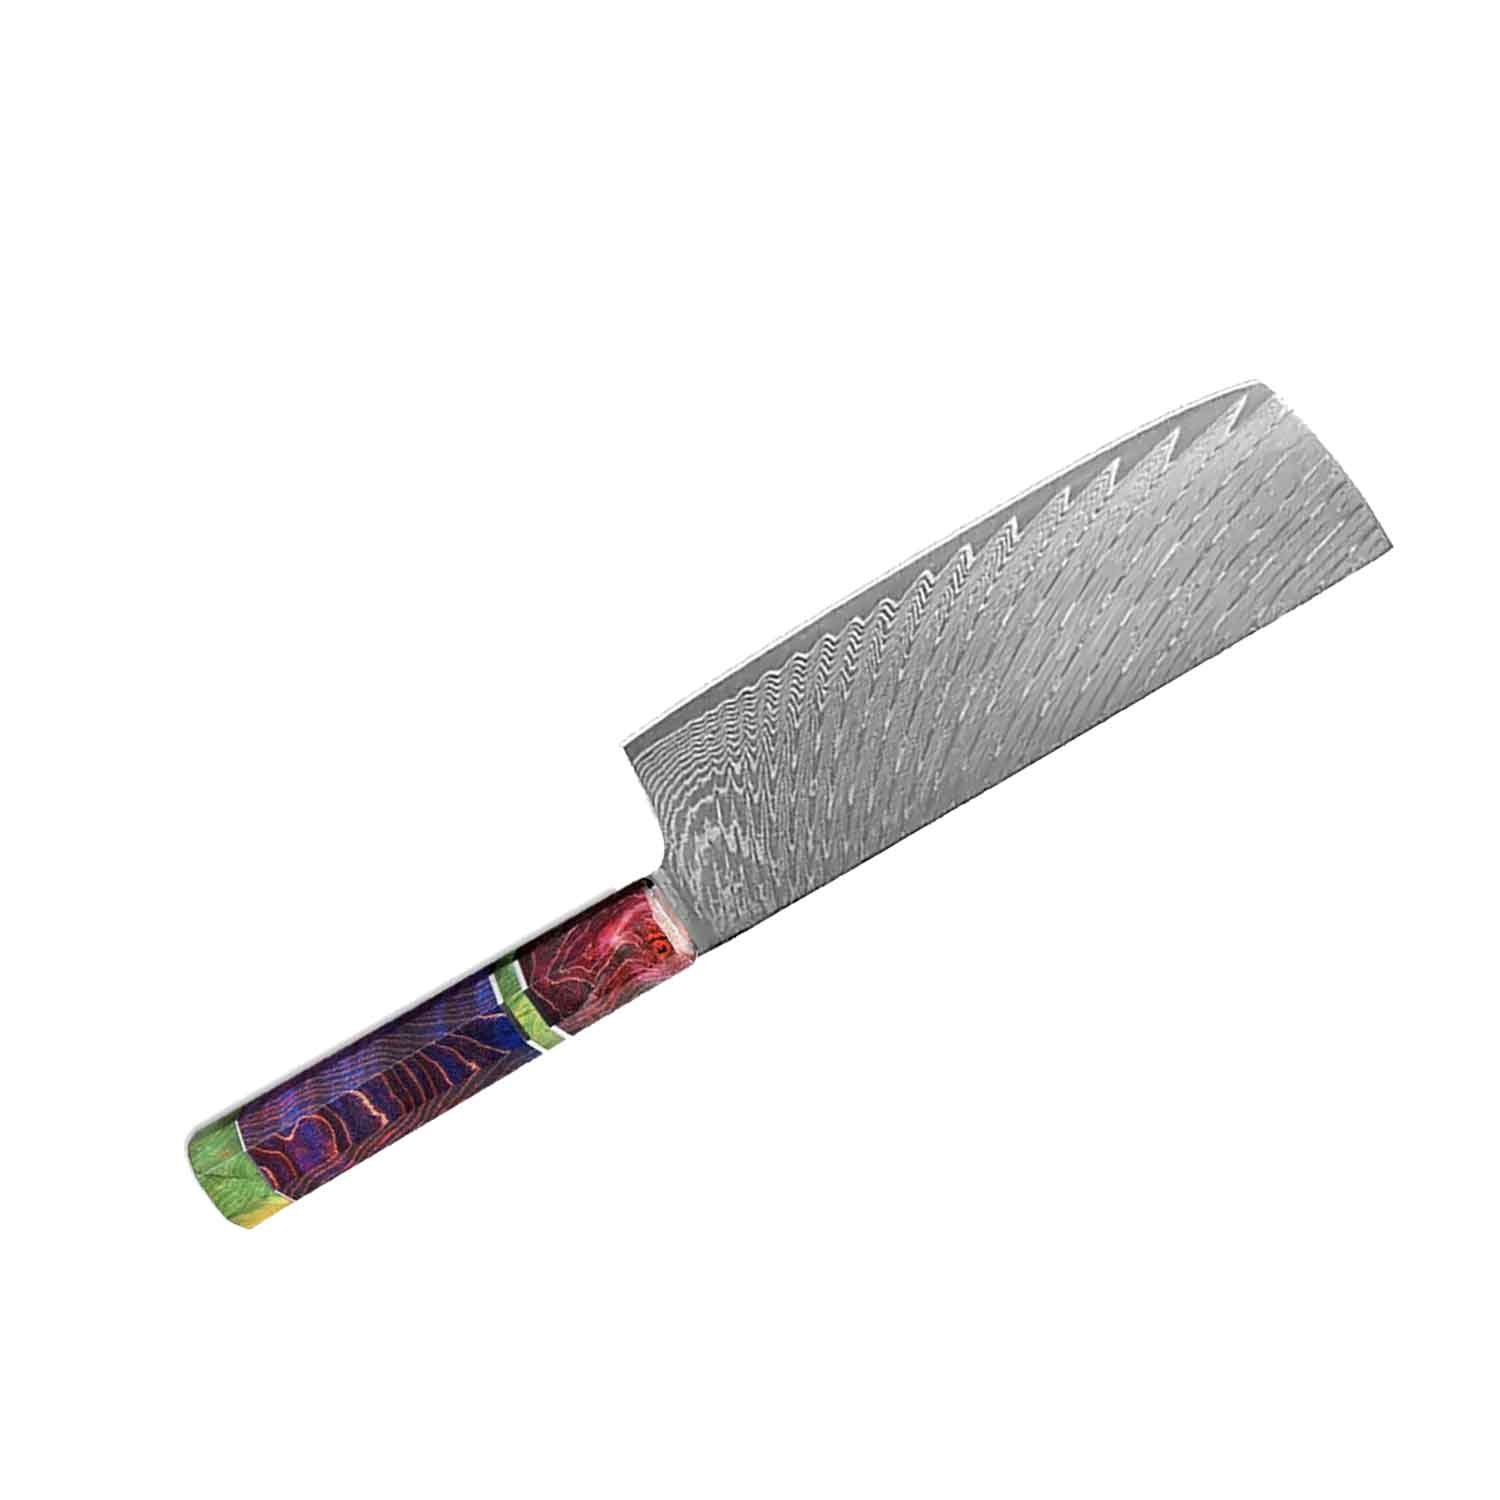 Cleaver Muxel Kochmesser Messer Hackbeil Damaskus Küchenmesser, das und Metzgermesser